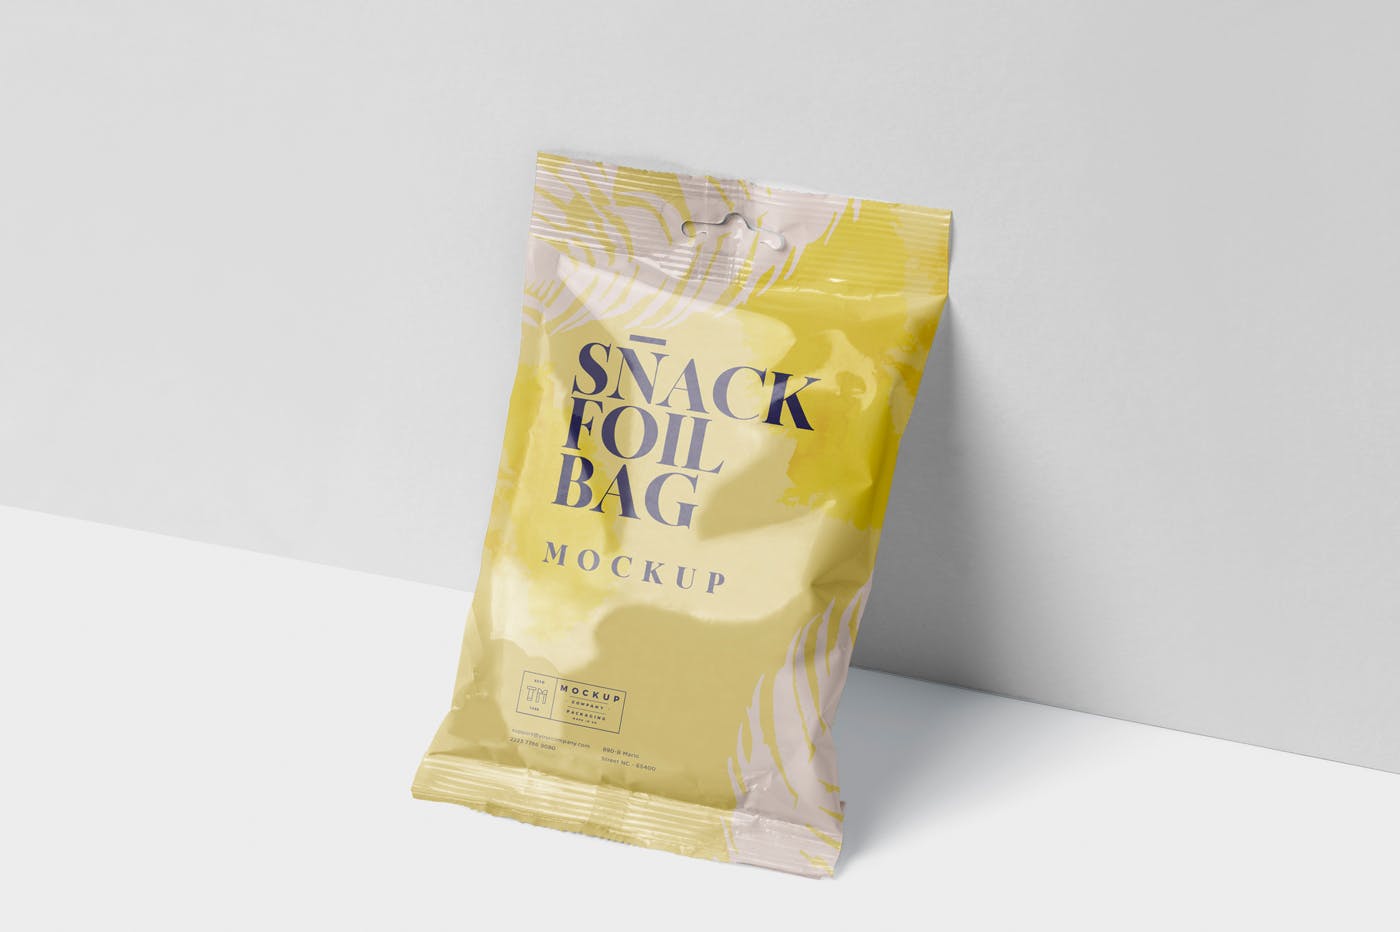 小吃零食铝箔包装袋设计样机模板 Snack Foil Bag Mockup – Slim Size插图(2)